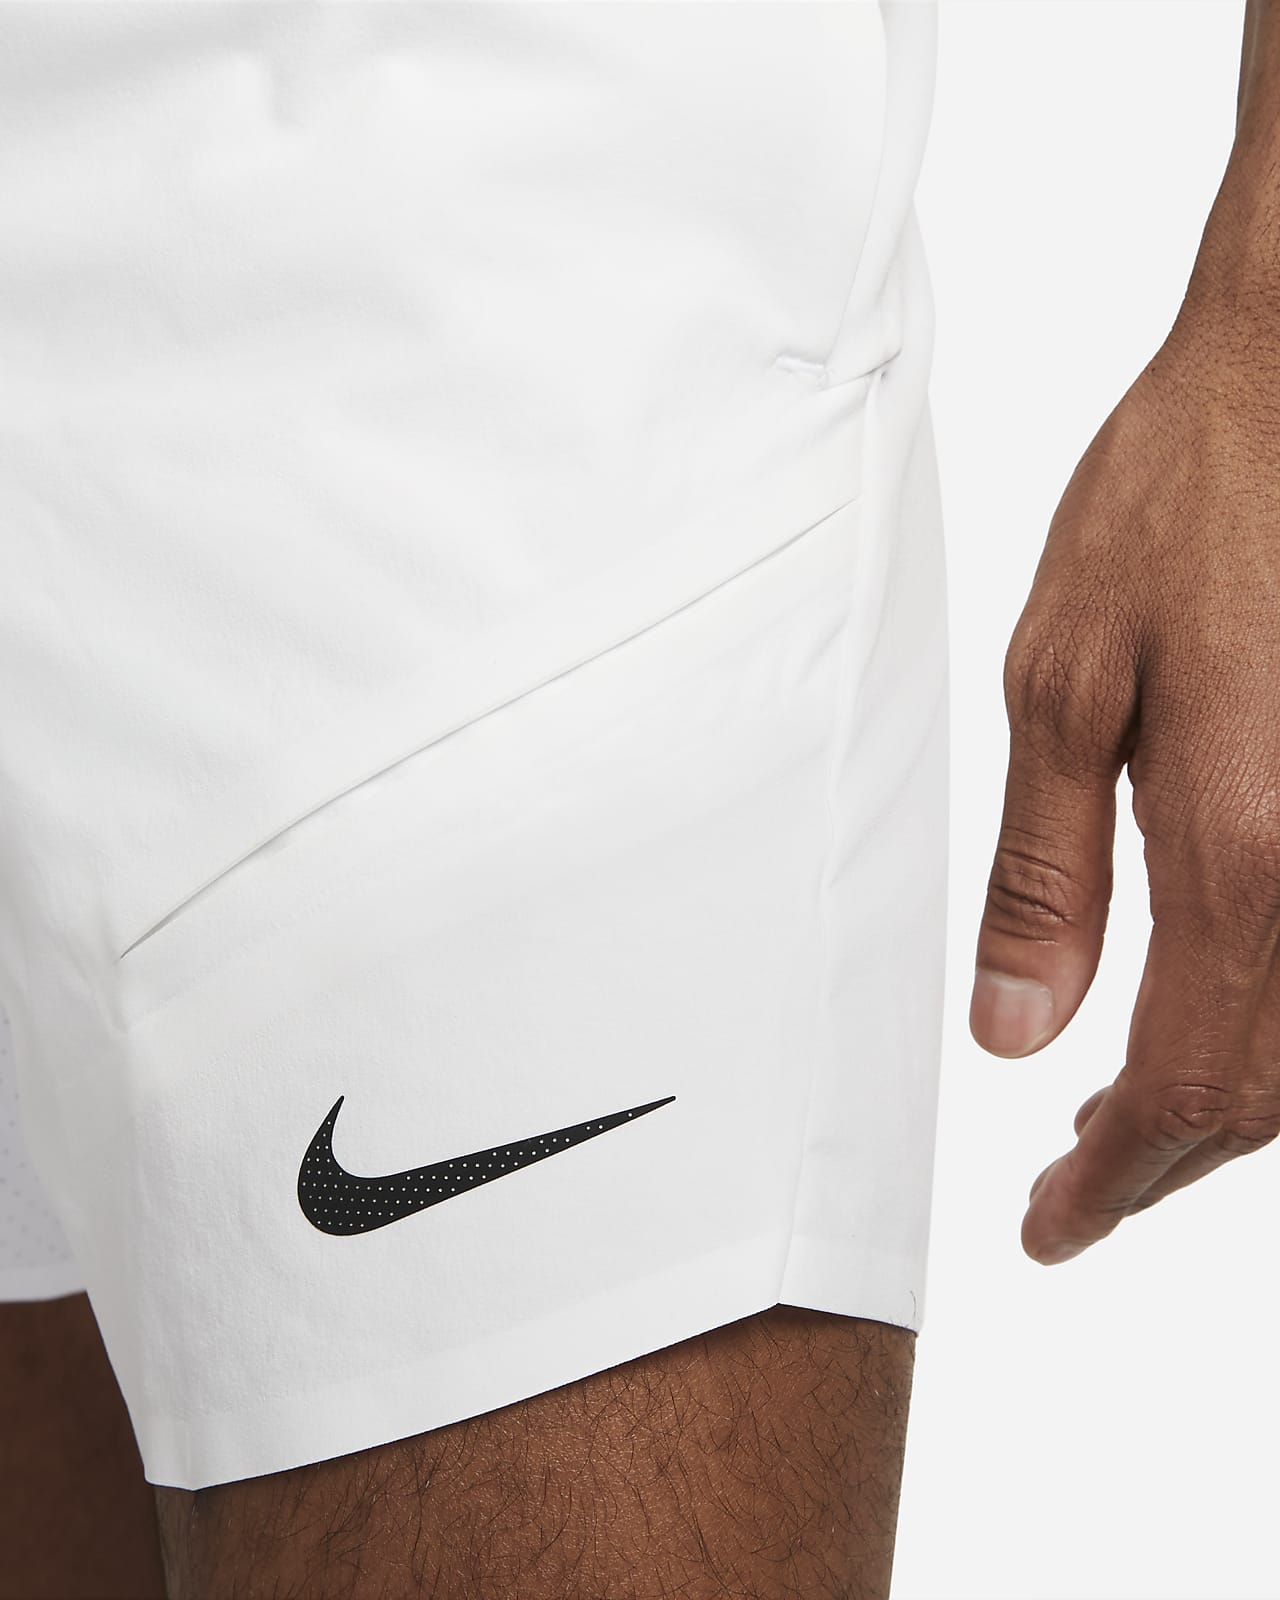 curb Civilize Arthur Conan Doyle NikeCourt Dri-FIT ADV Rafa Men's 7" Tennis Shorts. Nike.com